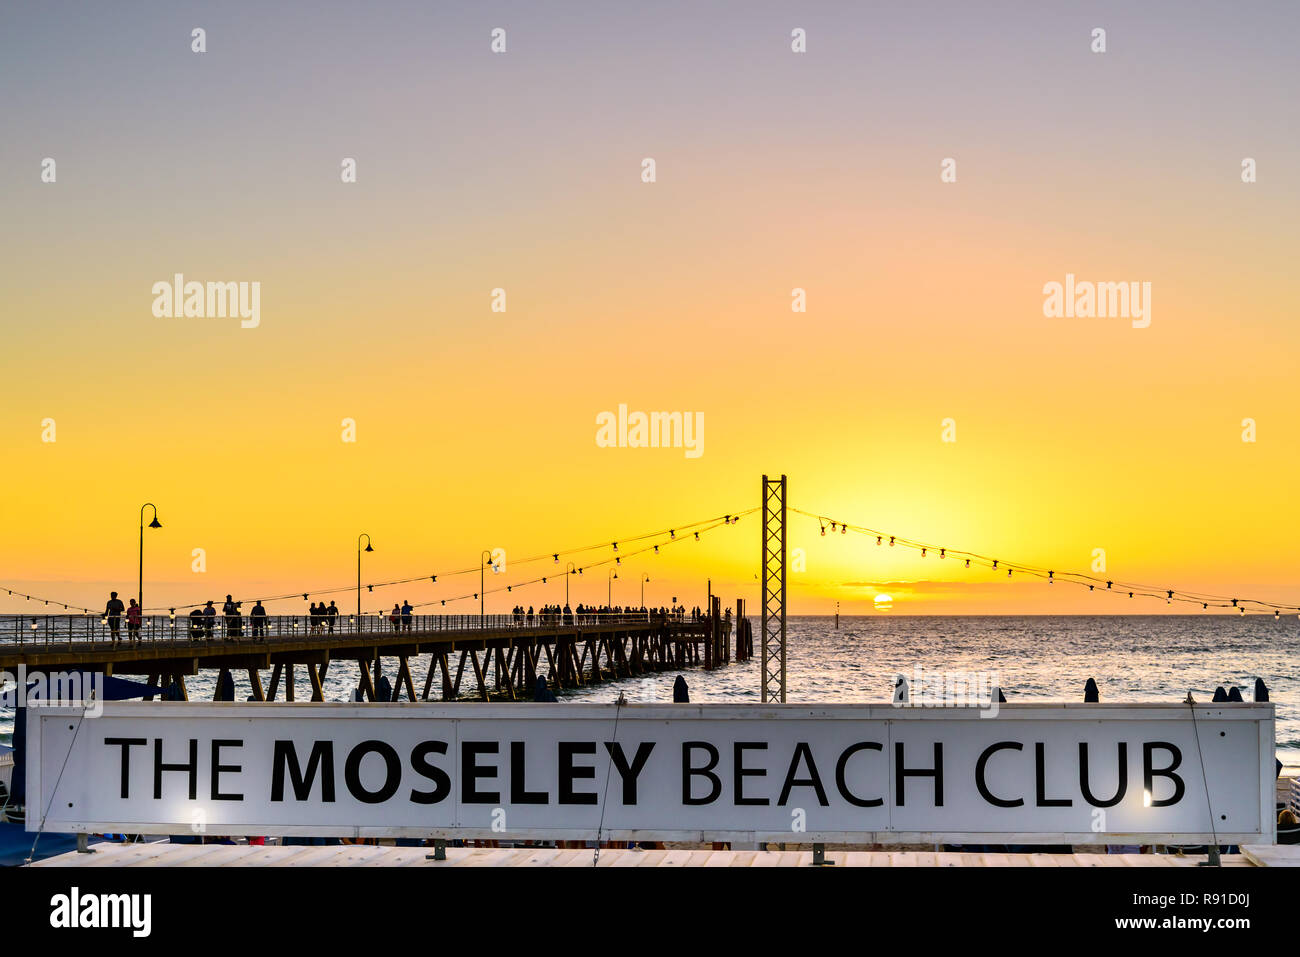 Adelaide, South Australia - 11. März 2018: Die moseley Beach Club Cafe Schild in Richtung Steg an einem sommerlichen Abend gesehen Stockfoto